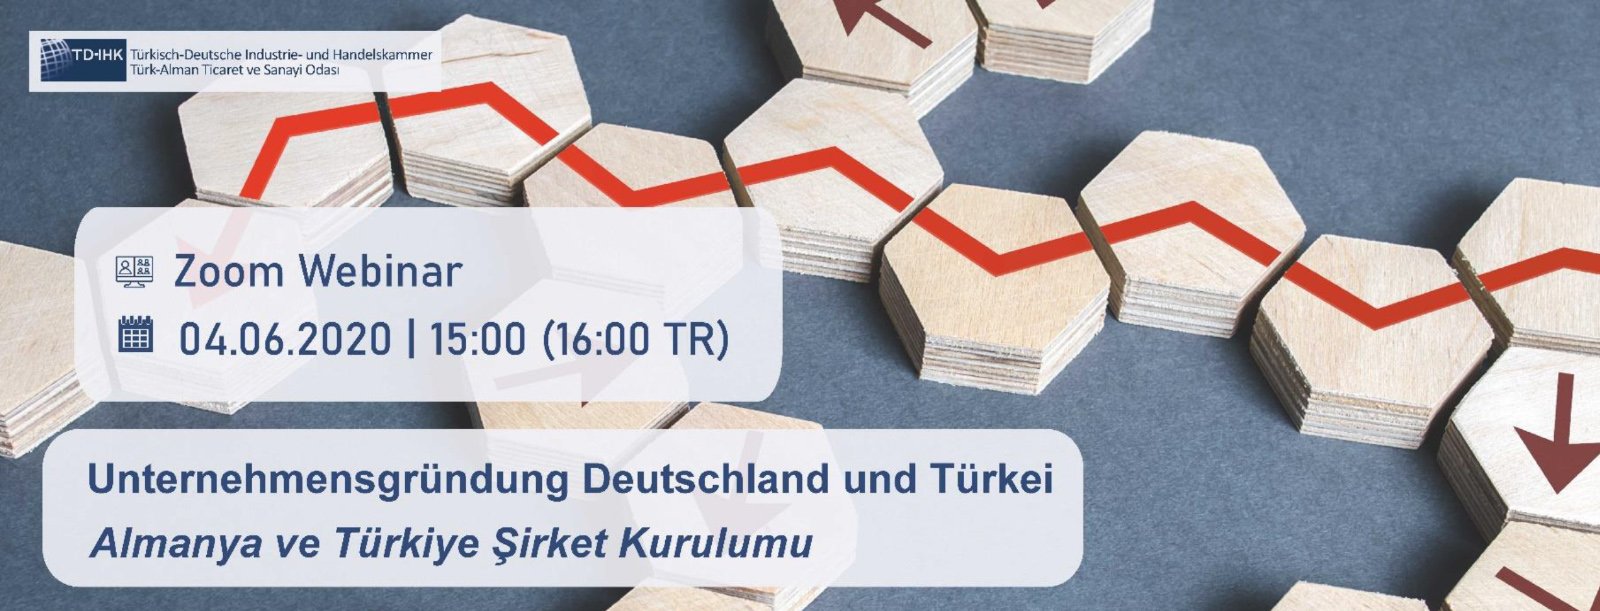 TD-IHK Web Semineri: Almanya ve Türkiye`de şirket kuruluşu